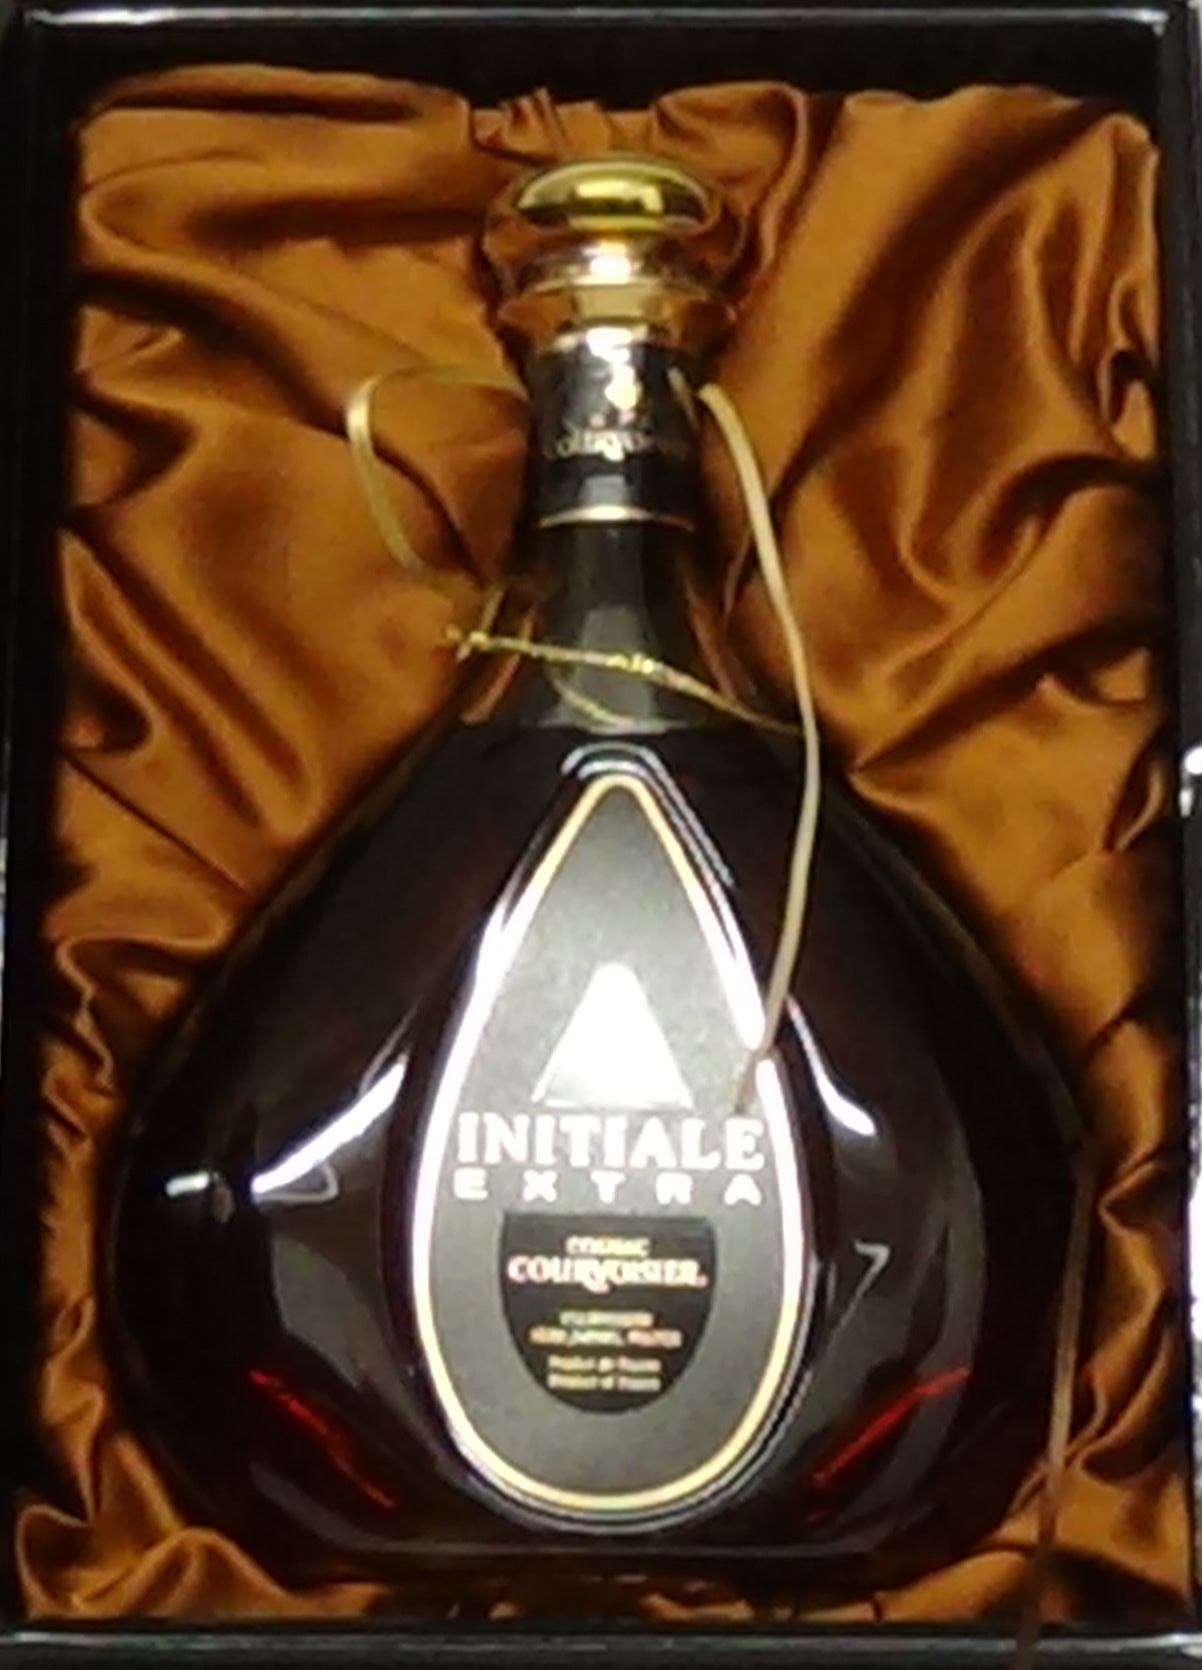 Courvoisier Initiale Extra Cognac - M&M Personal Vintners Ltd